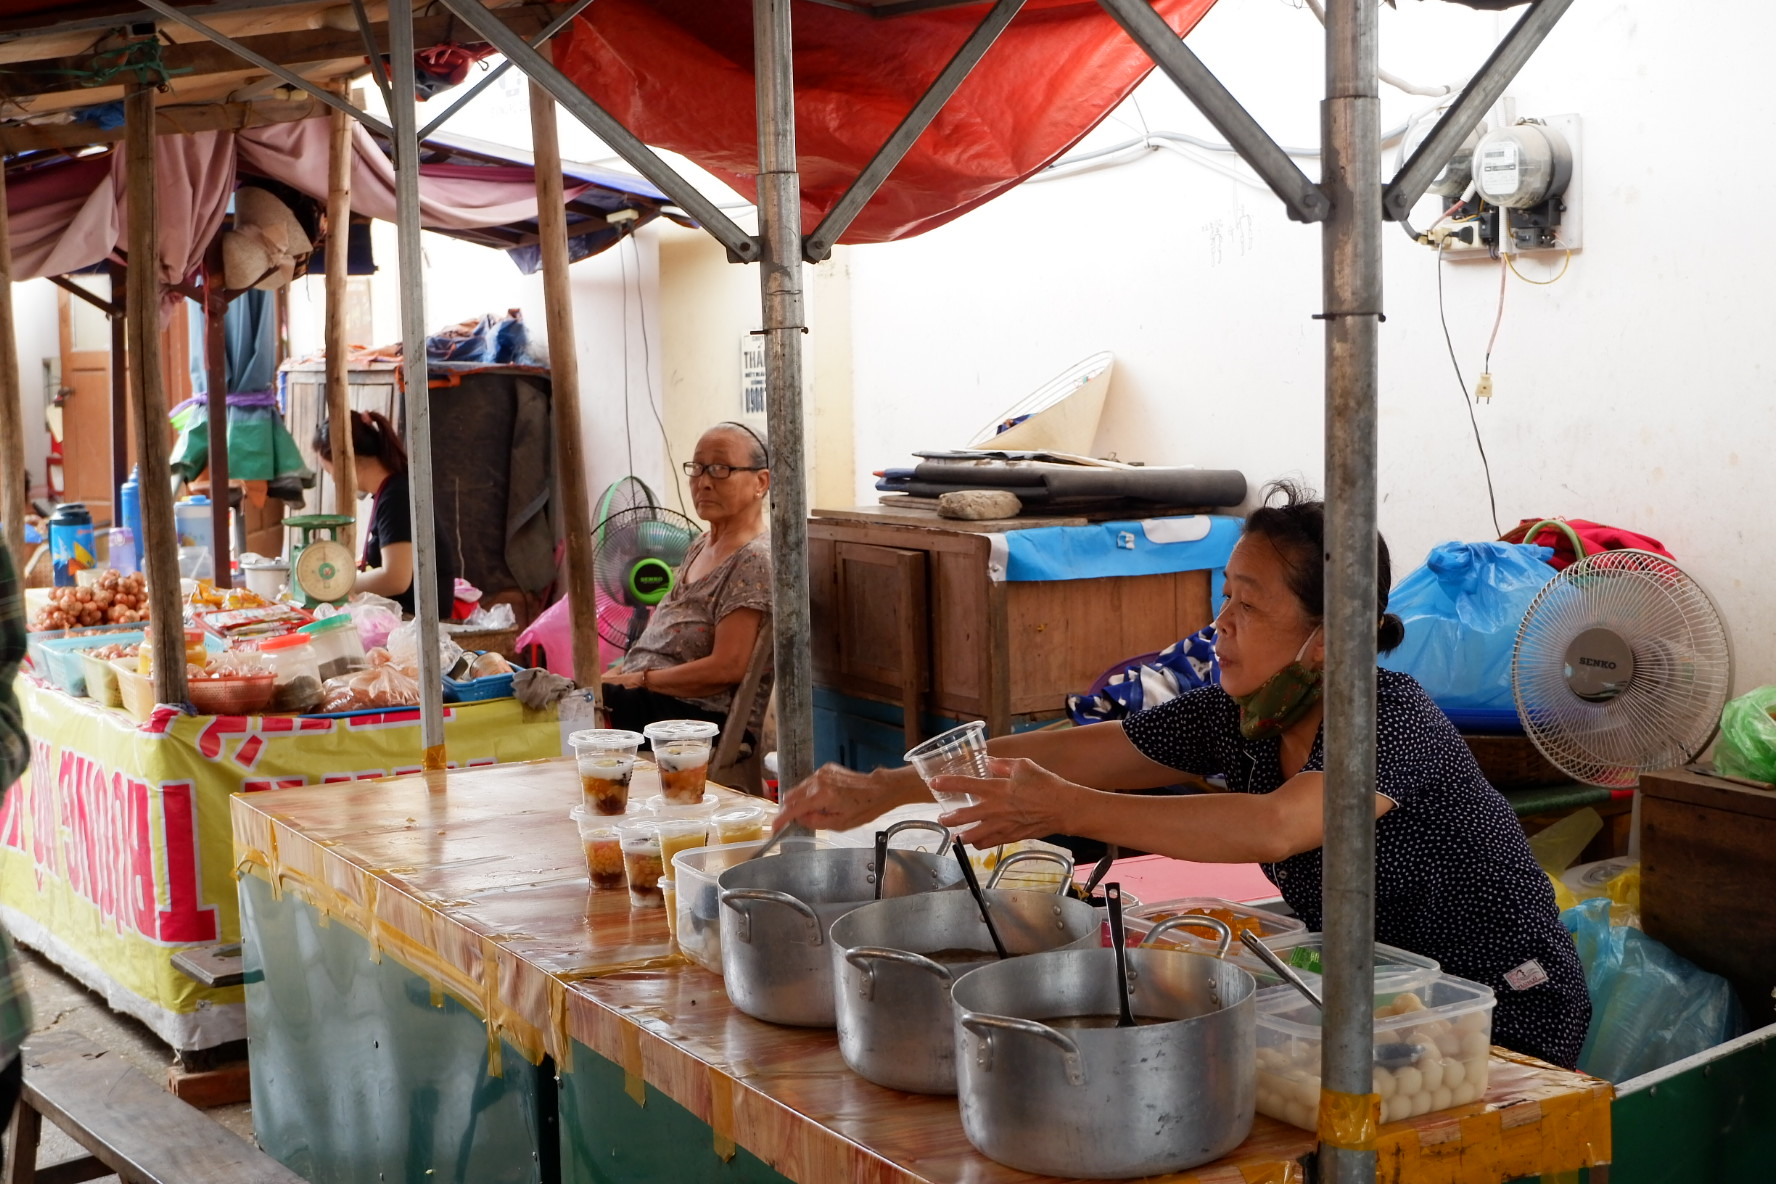 Món quà vặt ‘thơm ngọt, say say’ có mặt hơn 6 thập kỷ ở chợ Cộn Quảng Bình - 5